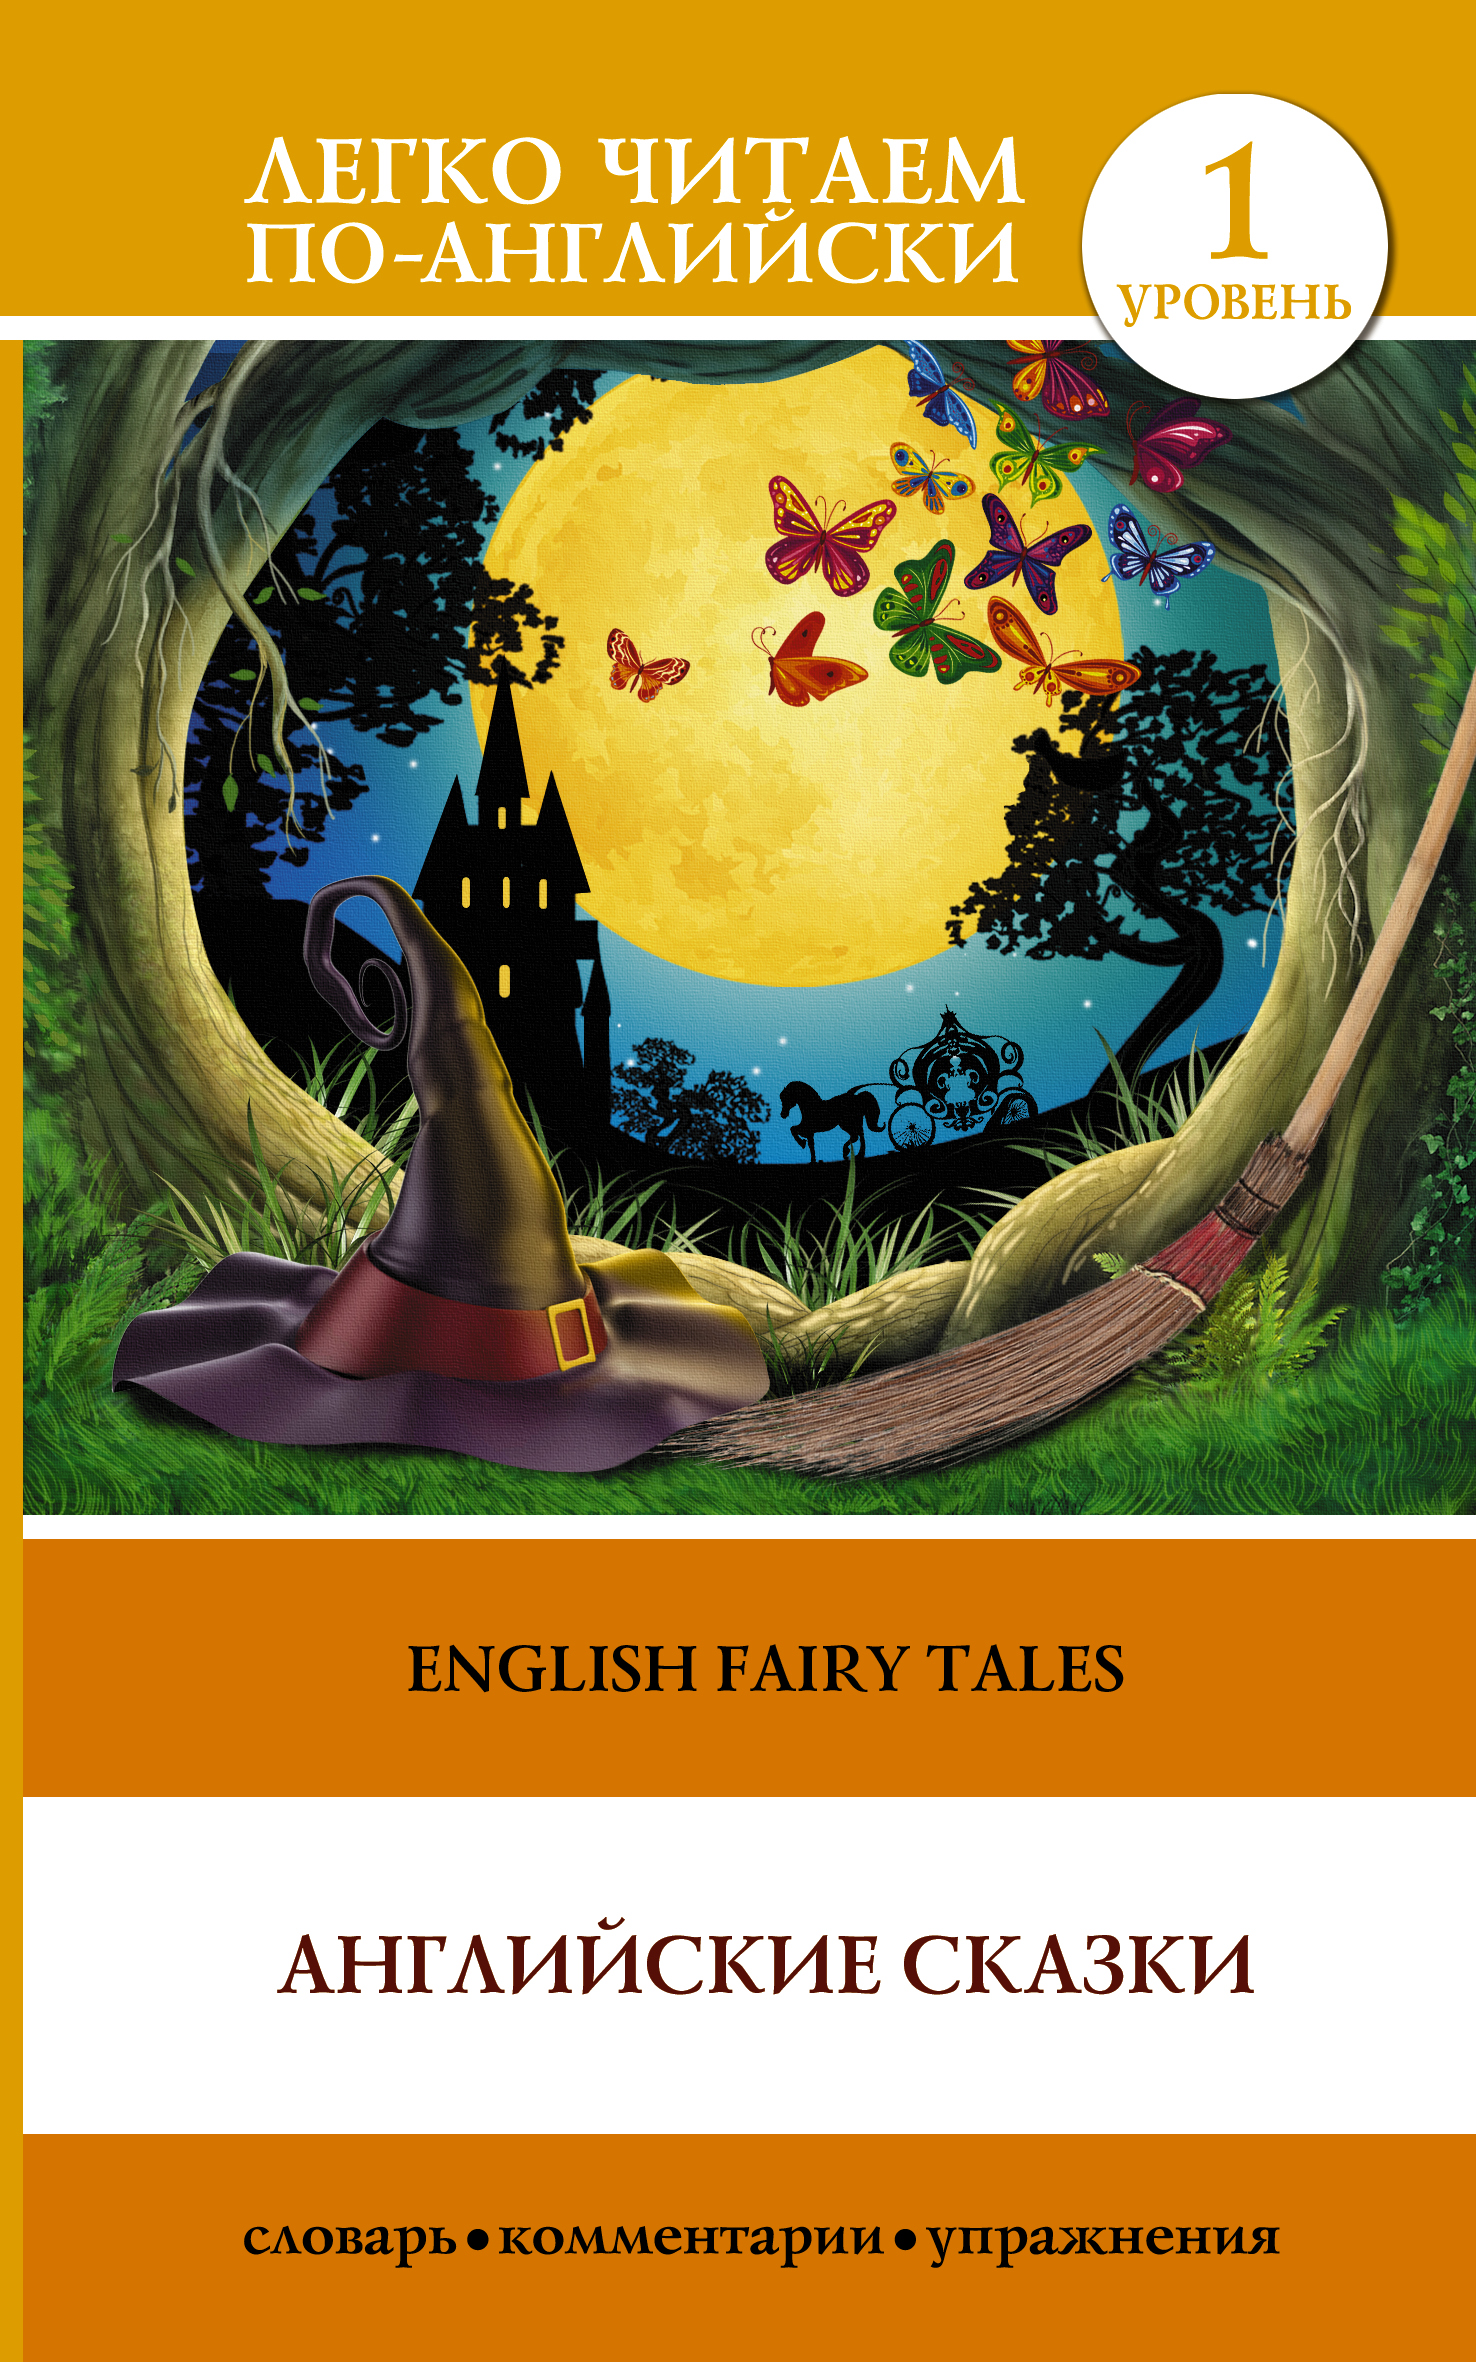 Английские сказки = English Fairy Tales. 1 уровень (Матвеев С.А.)